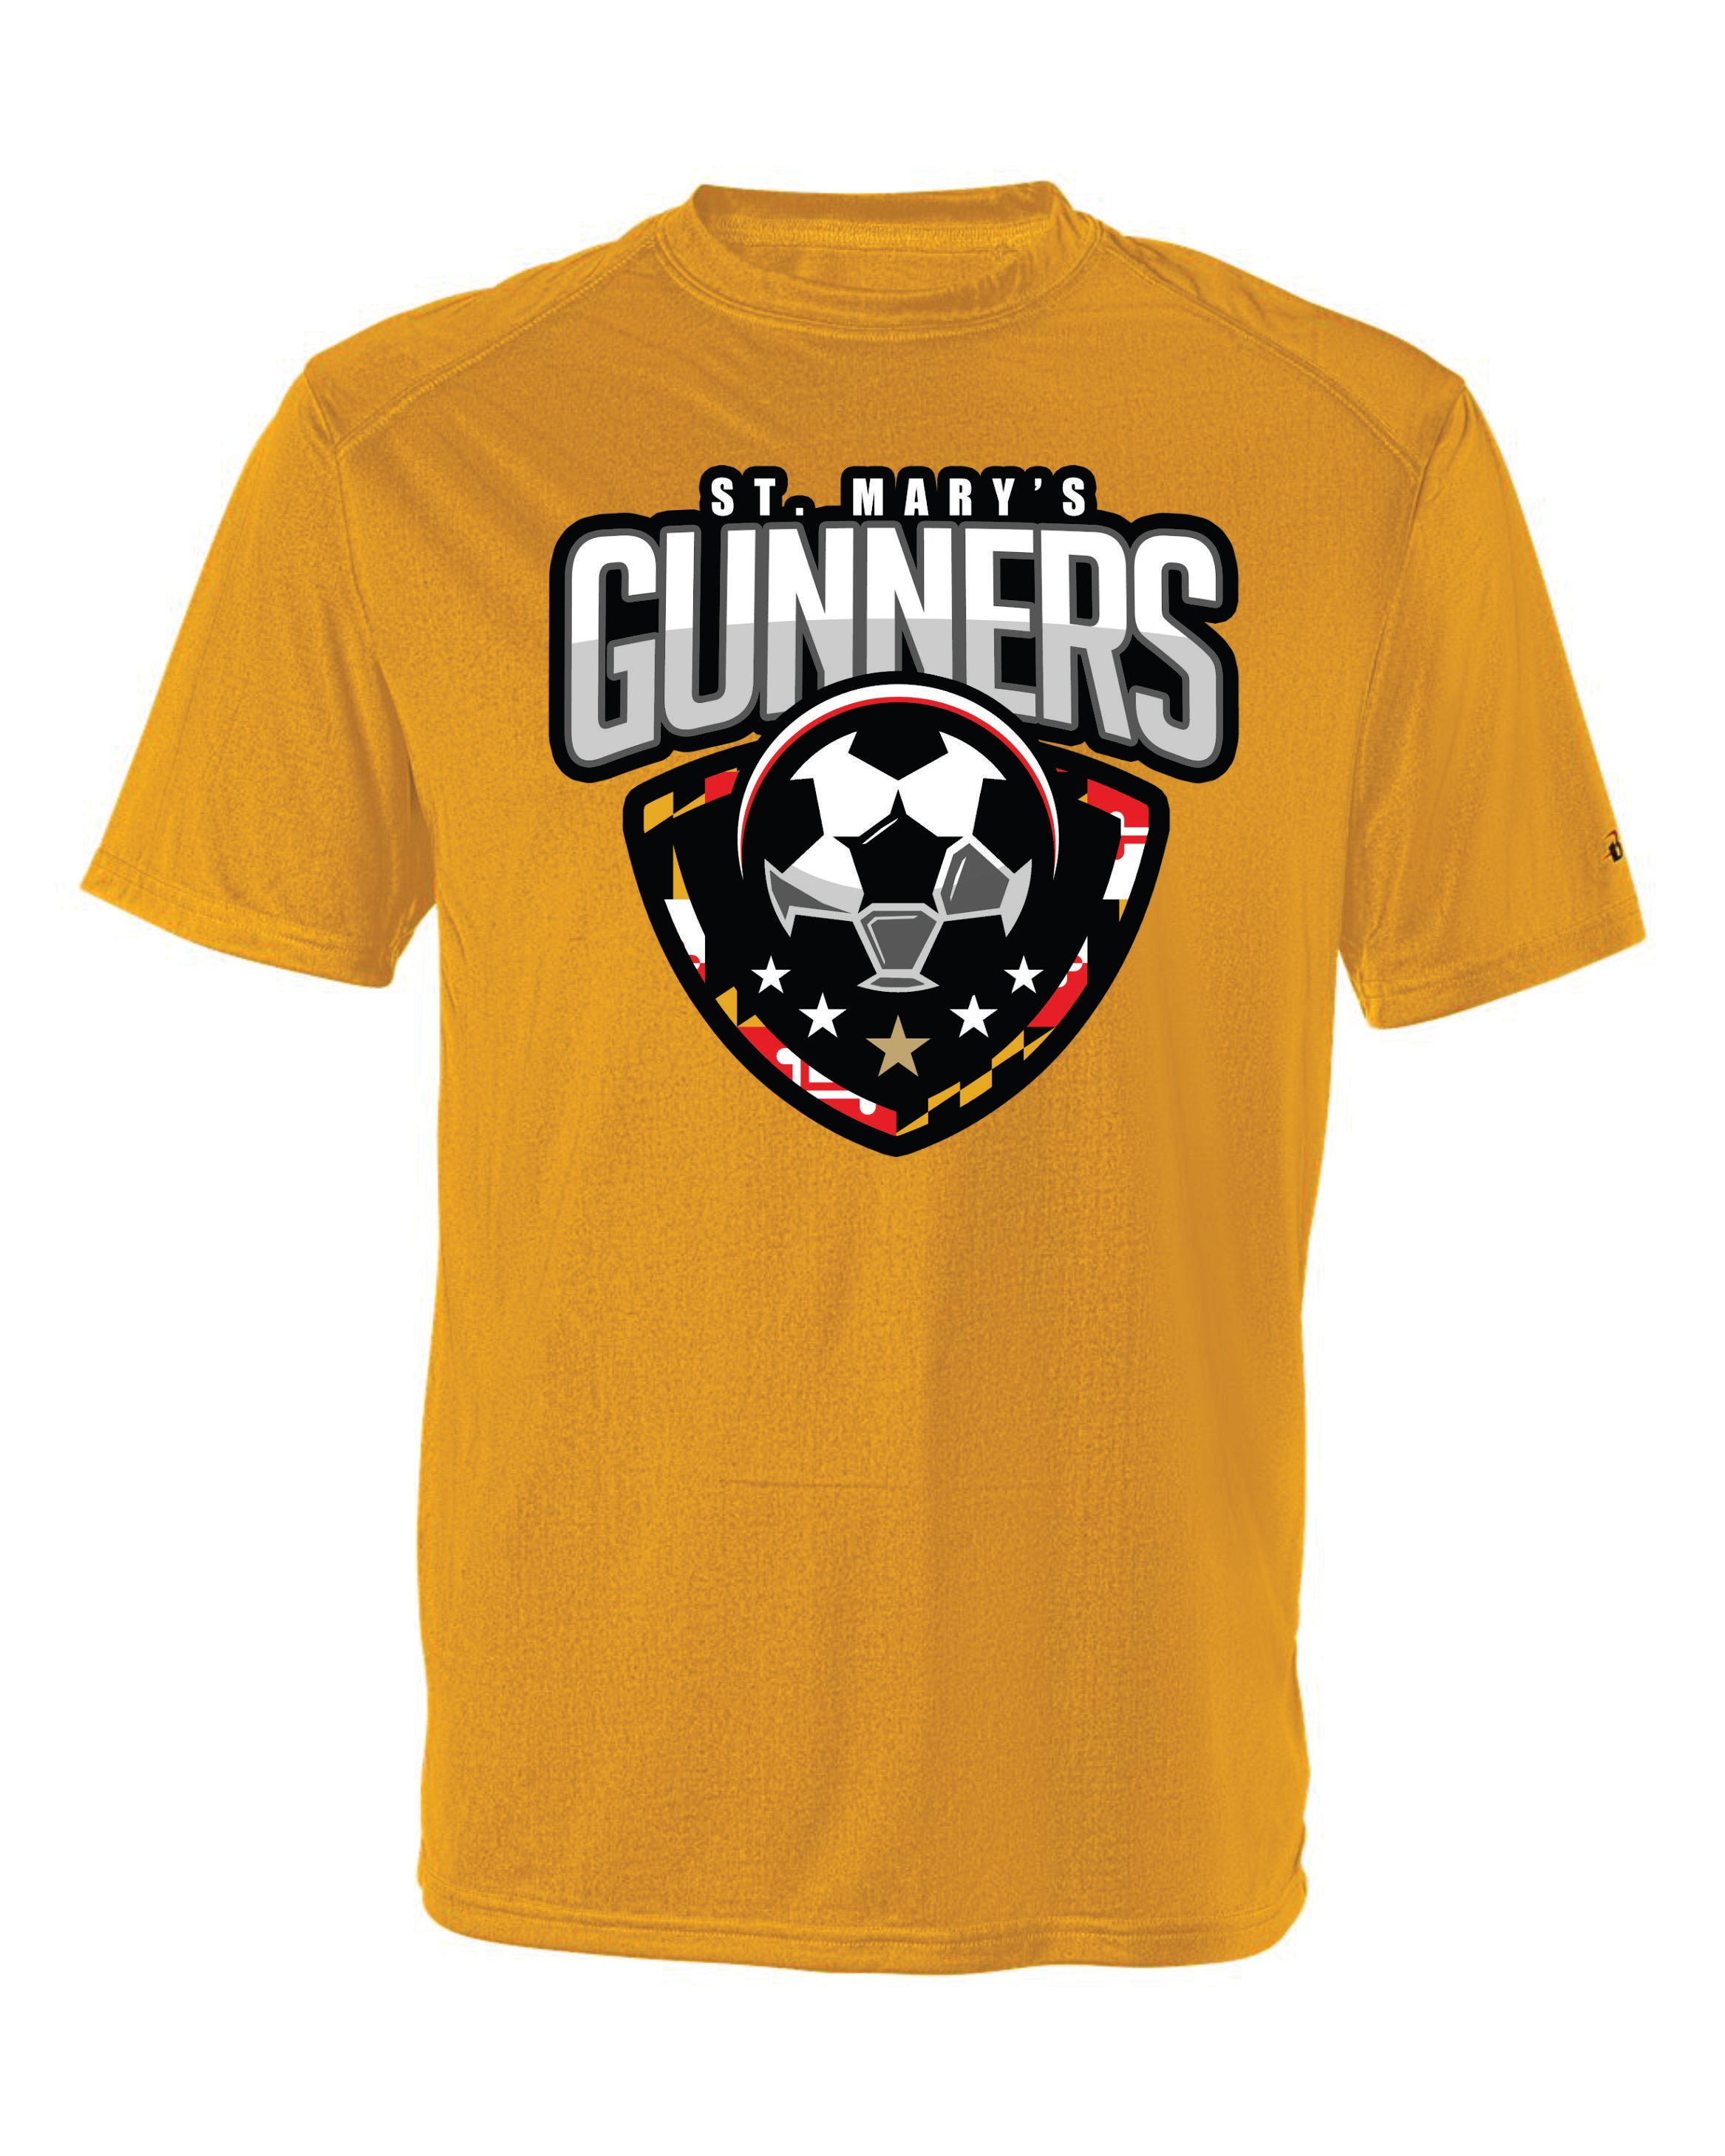 Gunners Short Sleeve Badger Dri Fit T shirt-WOMEN